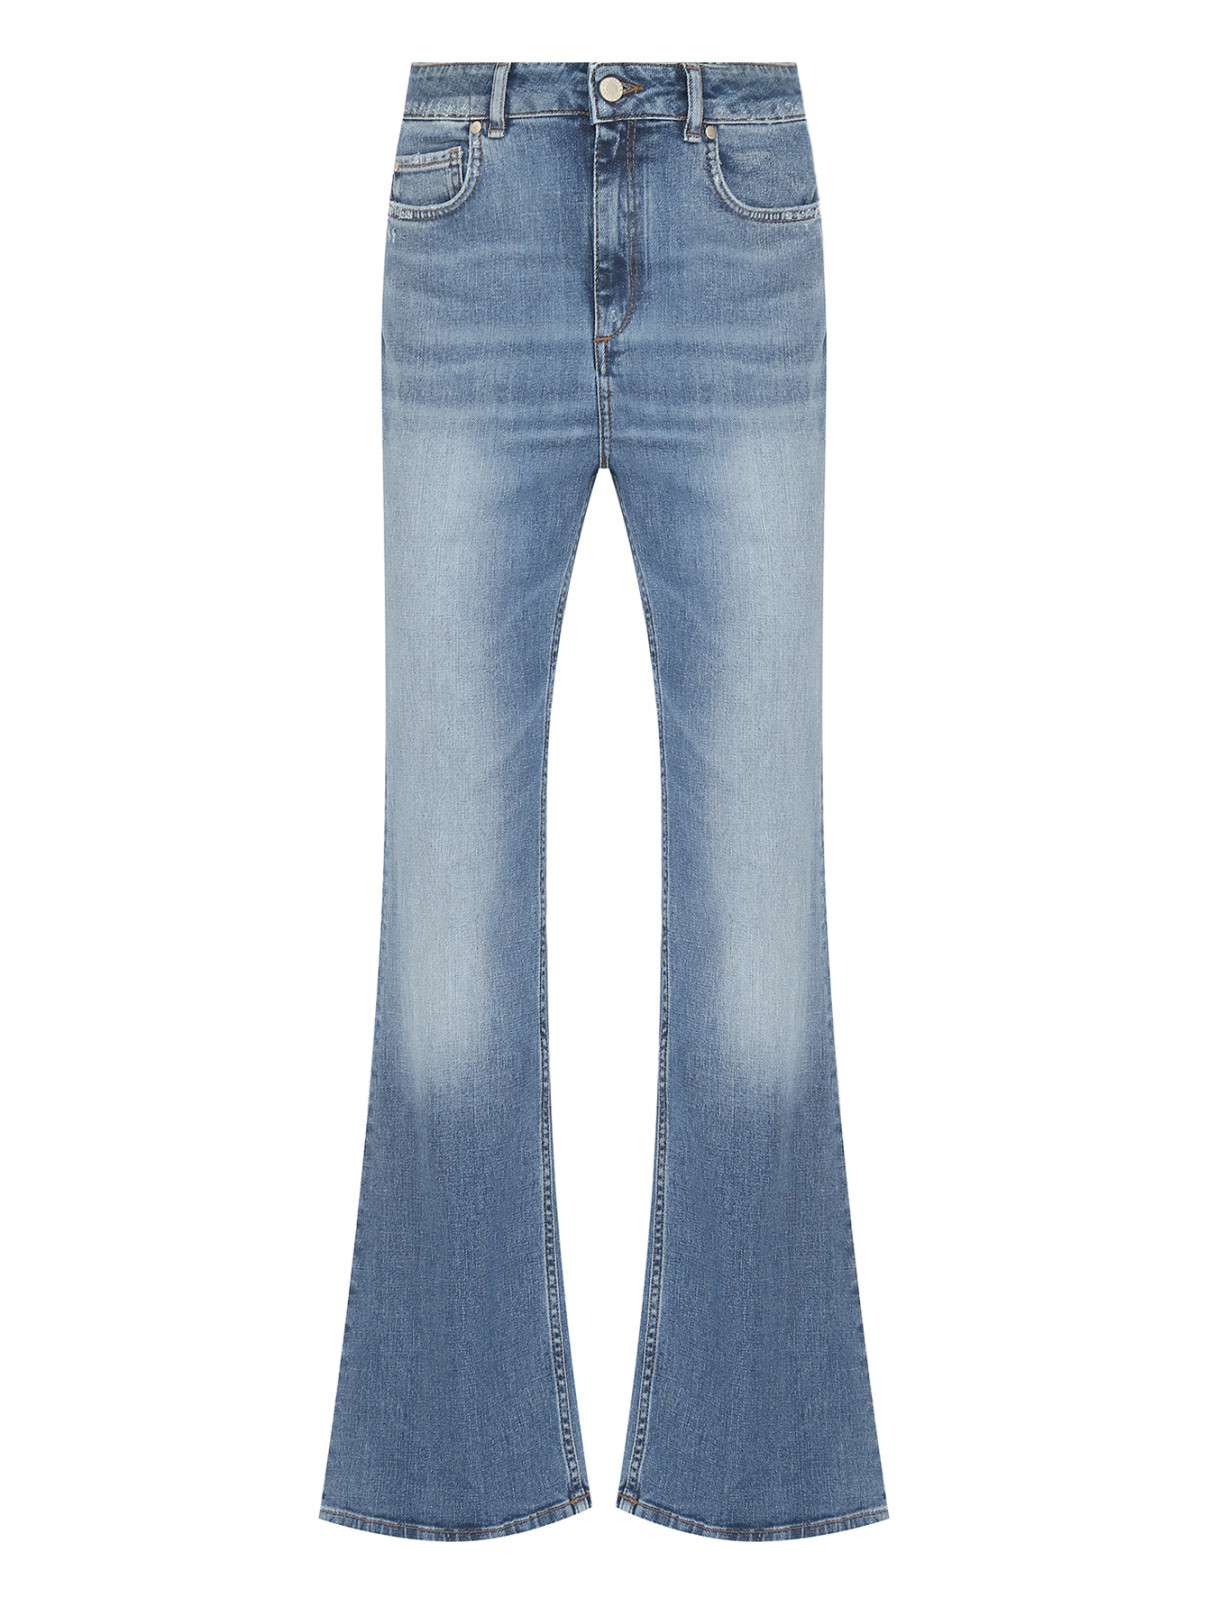 Расклешенные джинсы из хлопка Dorothee Schumacher  –  Общий вид  – Цвет:  Синий